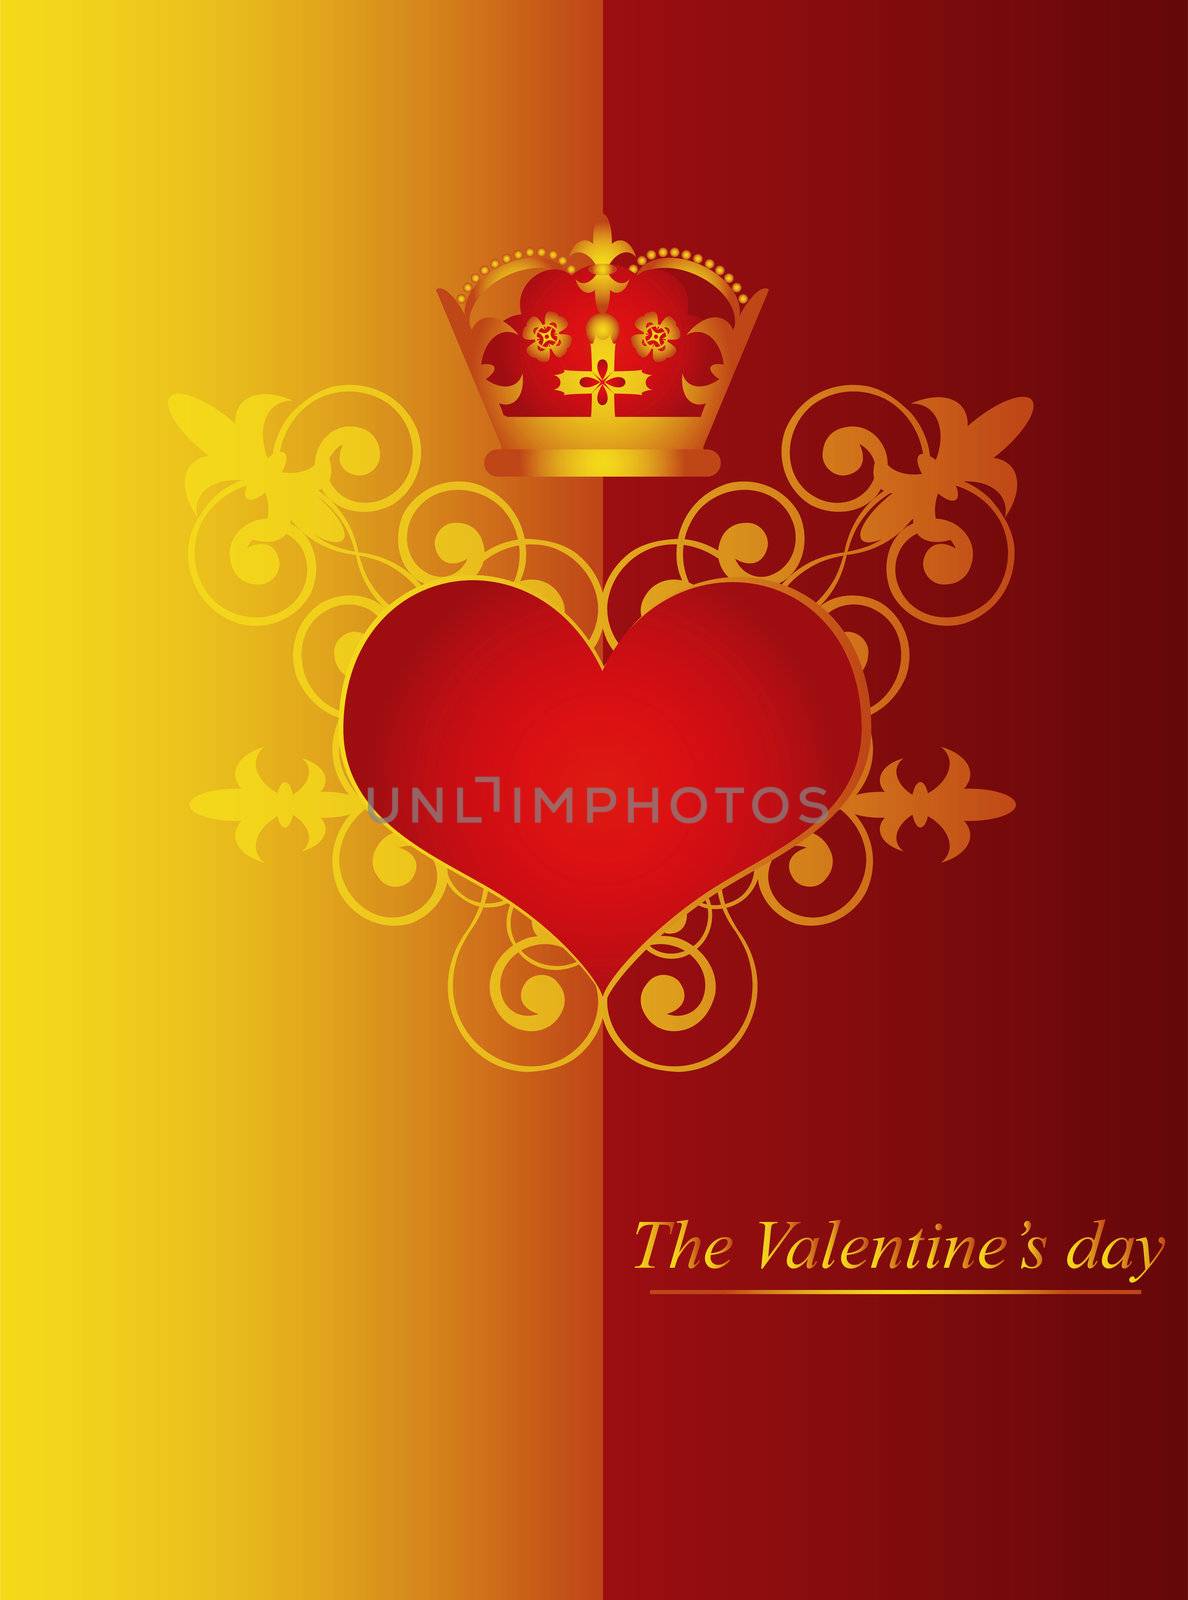 St.Valentine's design by Kuzma